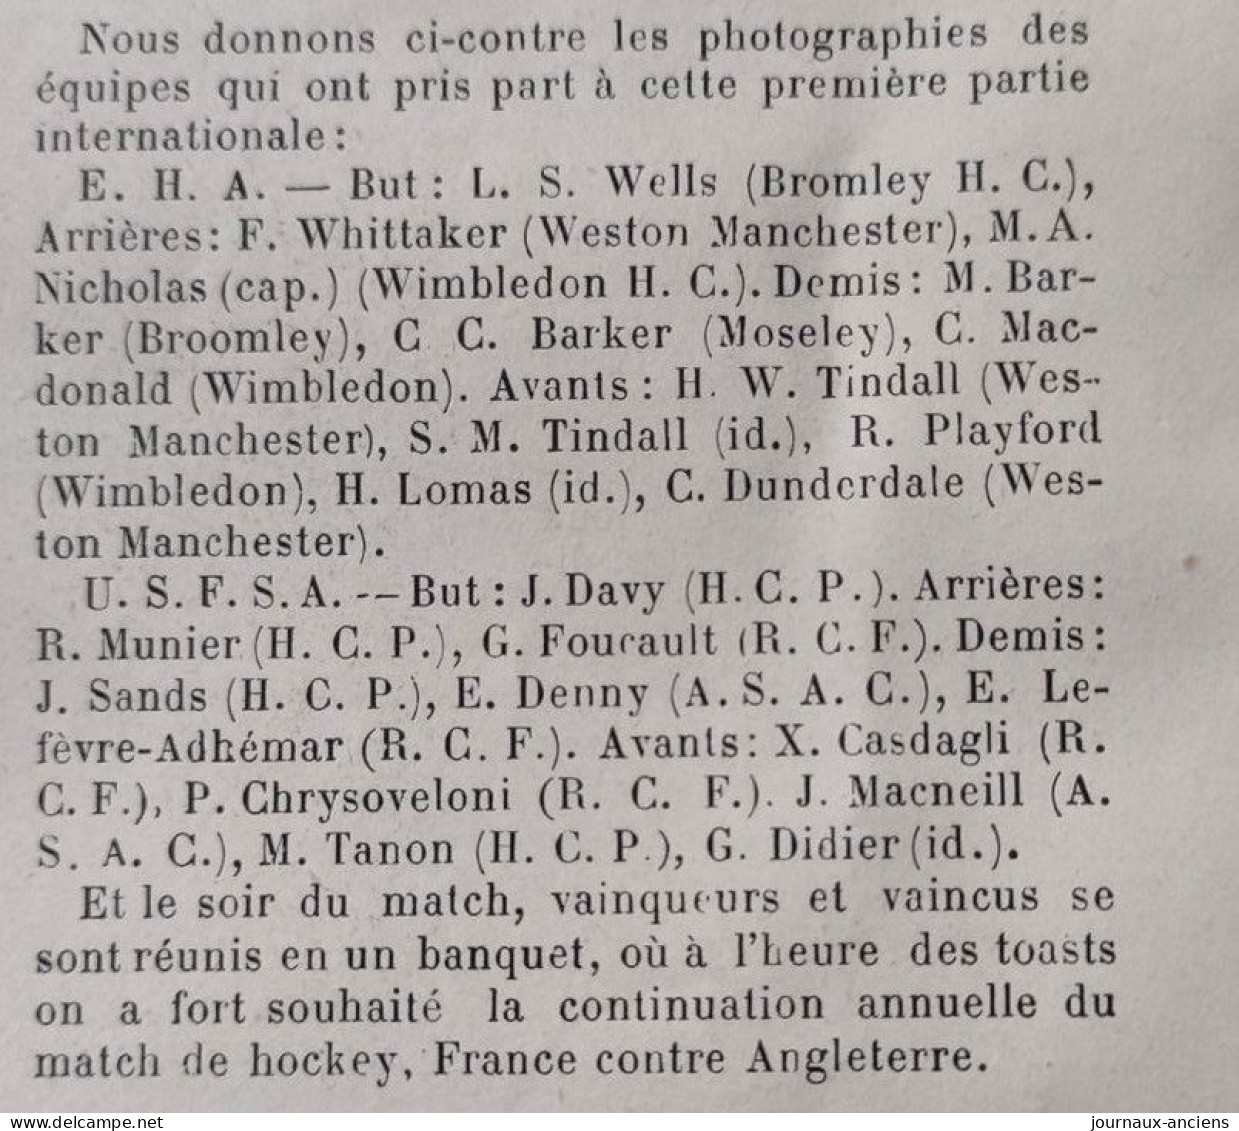 1899 HOCKEY SUR GAZON - UN MATCH INTERNATIONAL - EQUIPES FRANÇAIS ET ANGLAISE - LES CAPITAINES - LA VIE AU GRAND AIR